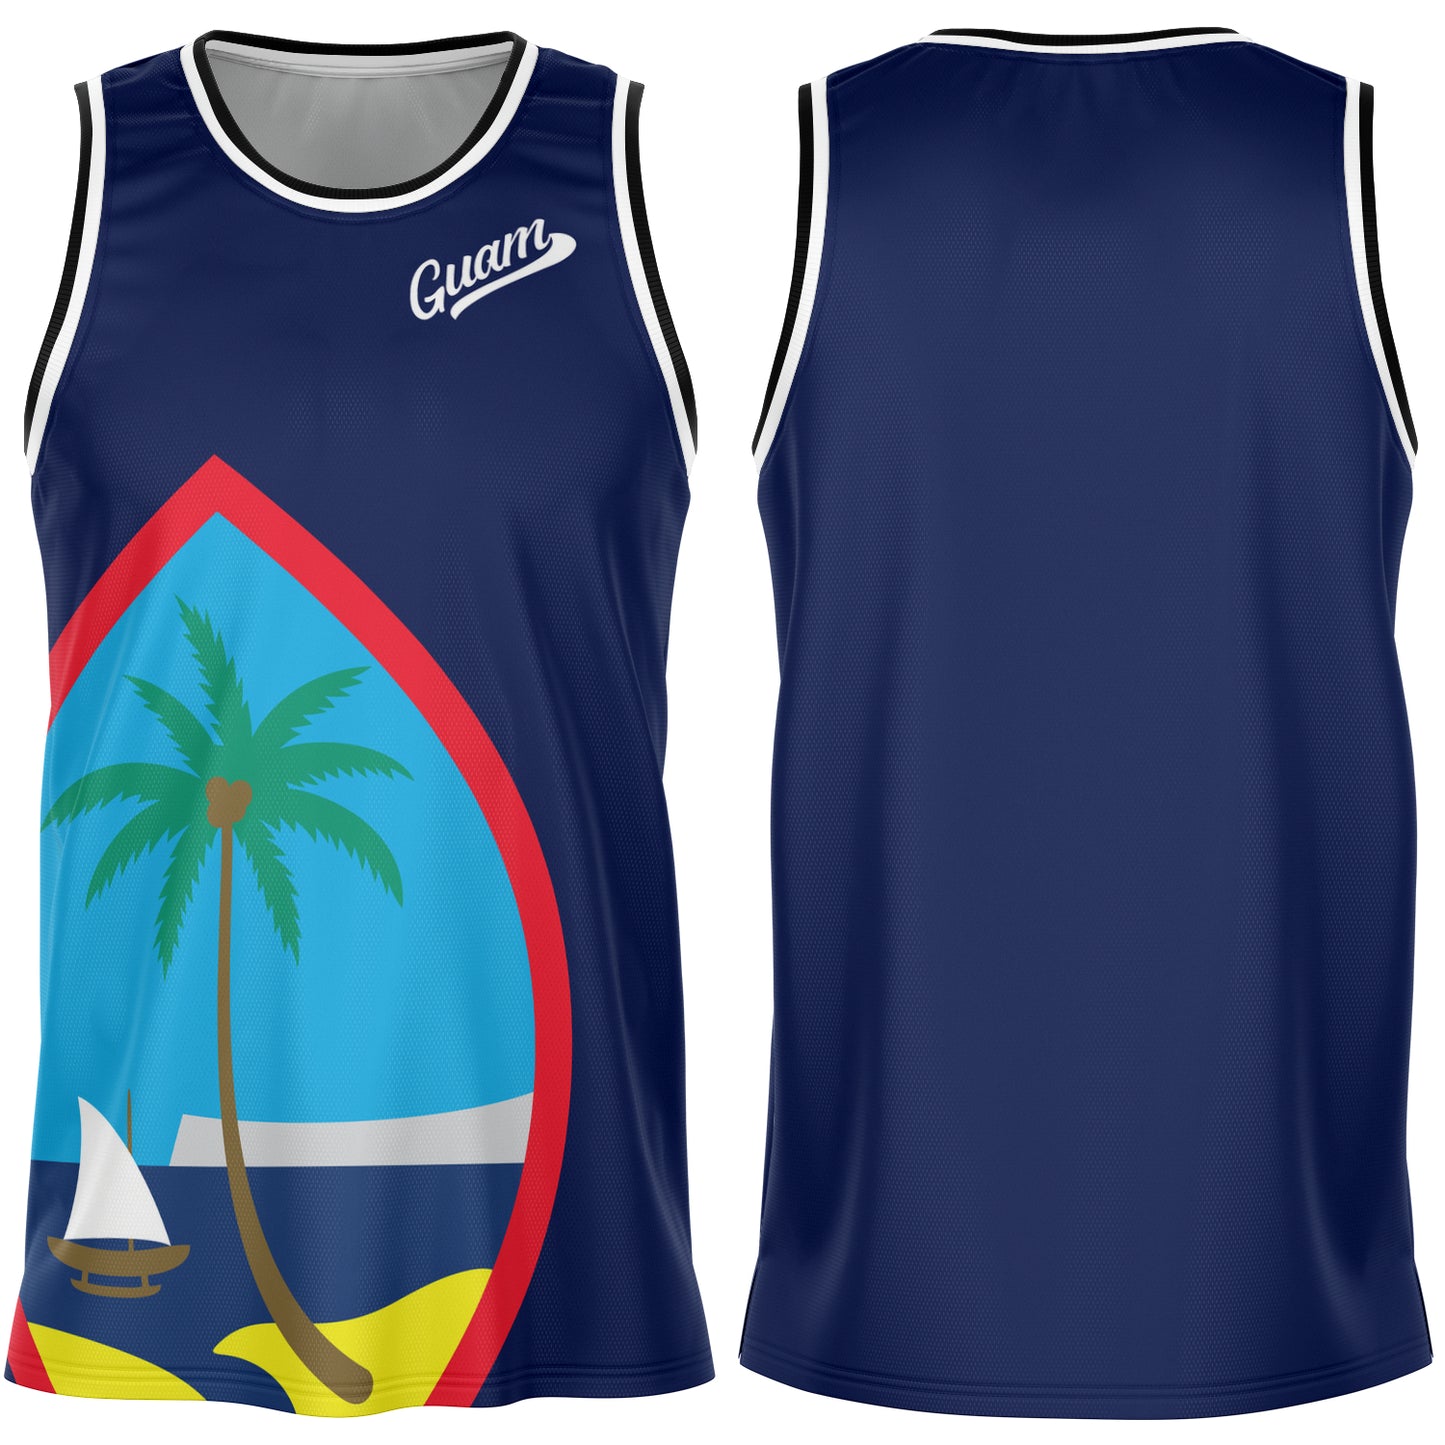 Guam Seal Blue Basketball Jersey